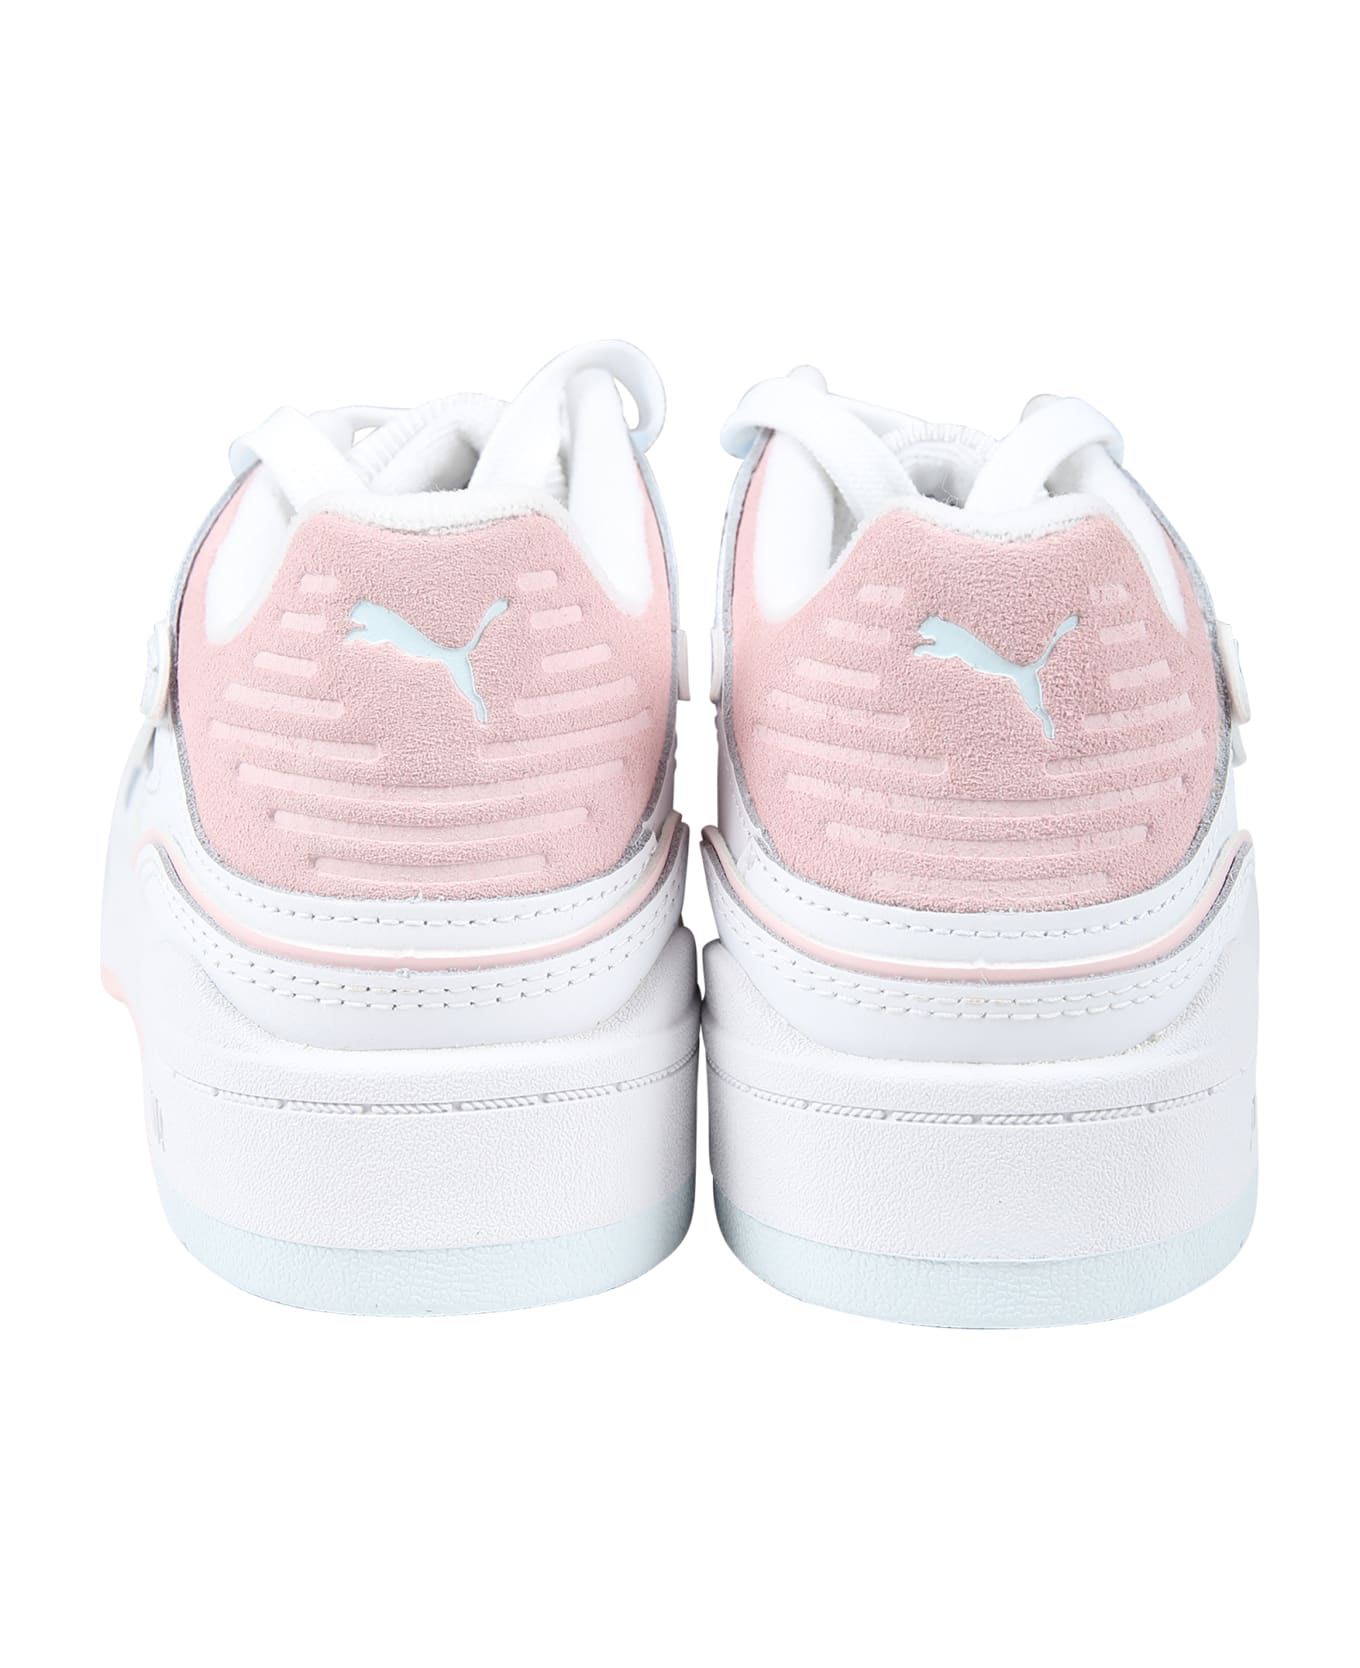 Puma White Slipstream Bball Jr Sneakers For Girl - White シューズ